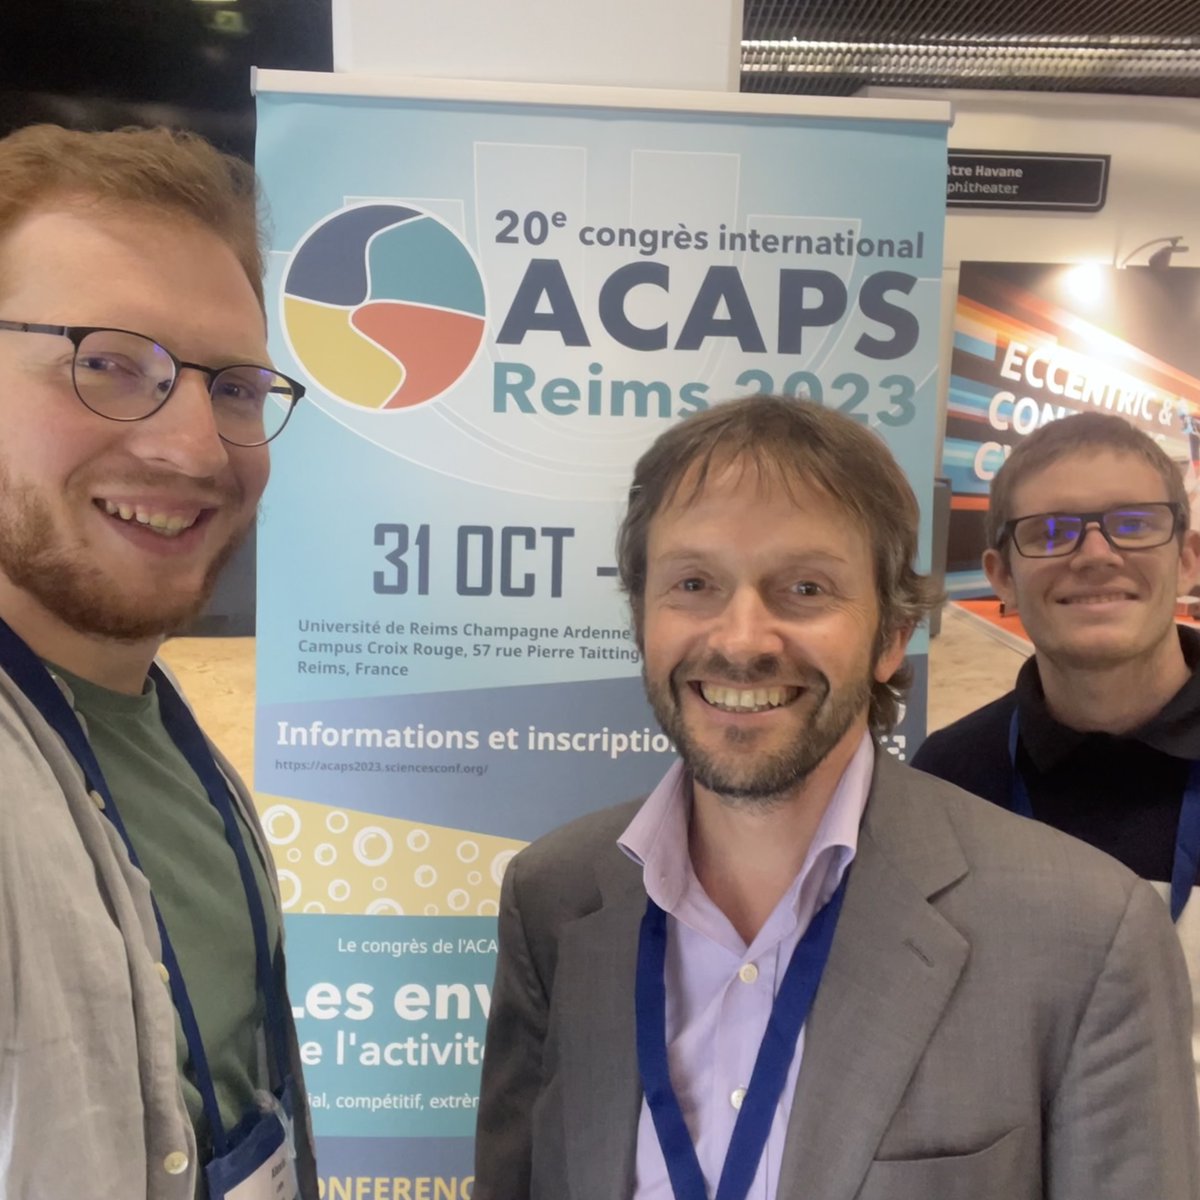 ACAPS et ECSS L'équipe d'organisation de l'ACAPS Reims 2023 était présente à l'ECSS 2023 à Paris pour promouvoir le congrès ! Hâte de vous rencontrer en vrai ! @e_c_s_s @universitereims @LaboratoirePsms #ecss2023 @ACAPS_asso